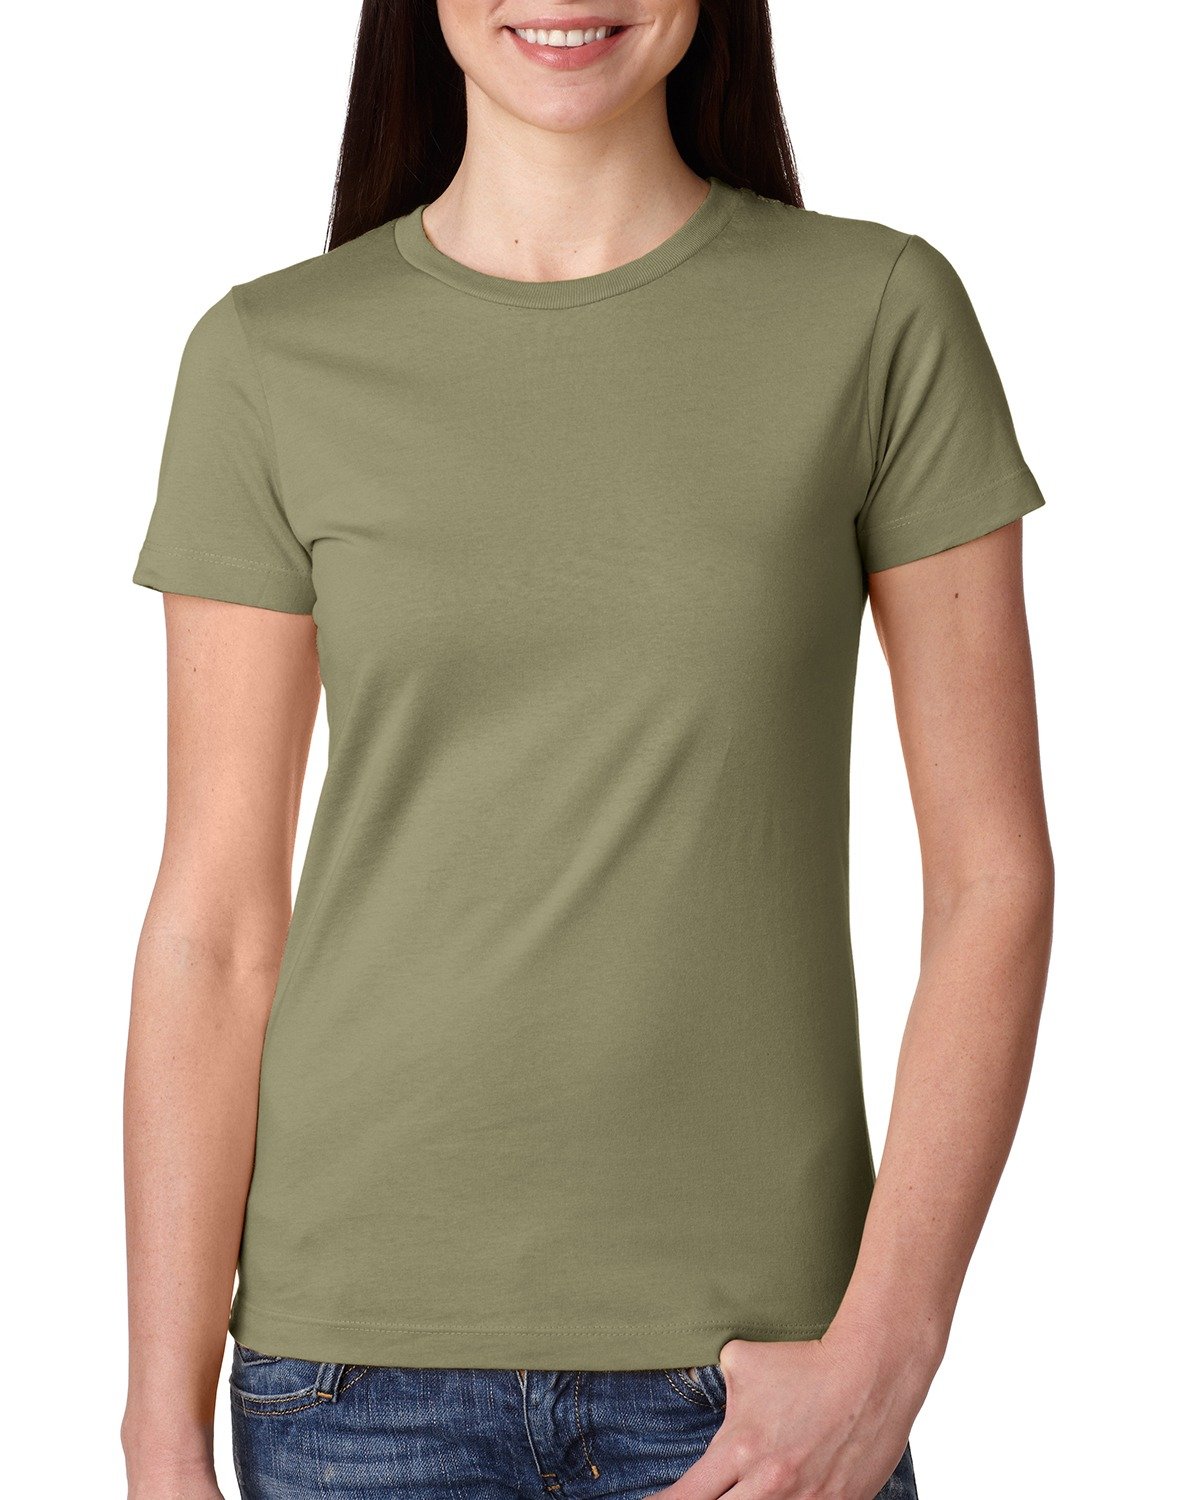 Next Level - Ladies' Boyfriend T-Shirt-Forest green-3XL